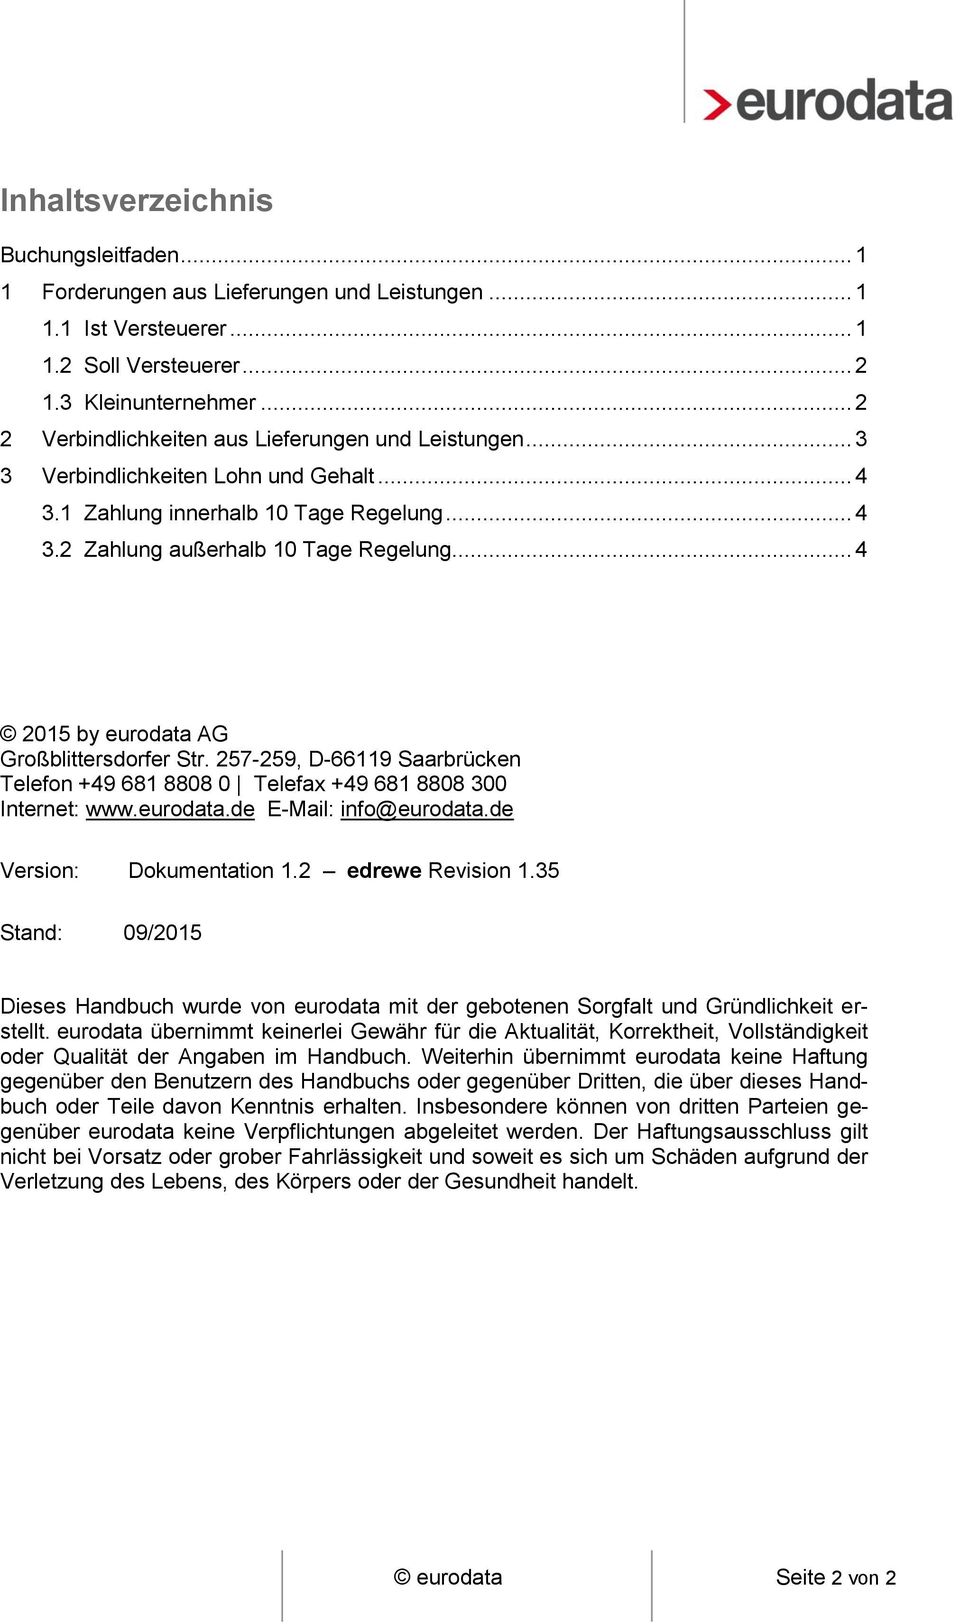 .. 4 2015 by eurodata AG Großblittersdorfer Str. 257-259, D-66119 Saarbrücken Telefon +49 681 8808 0 Telefax +49 681 8808 300 Internet: www.eurodata.de E-Mail: info@eurodata.